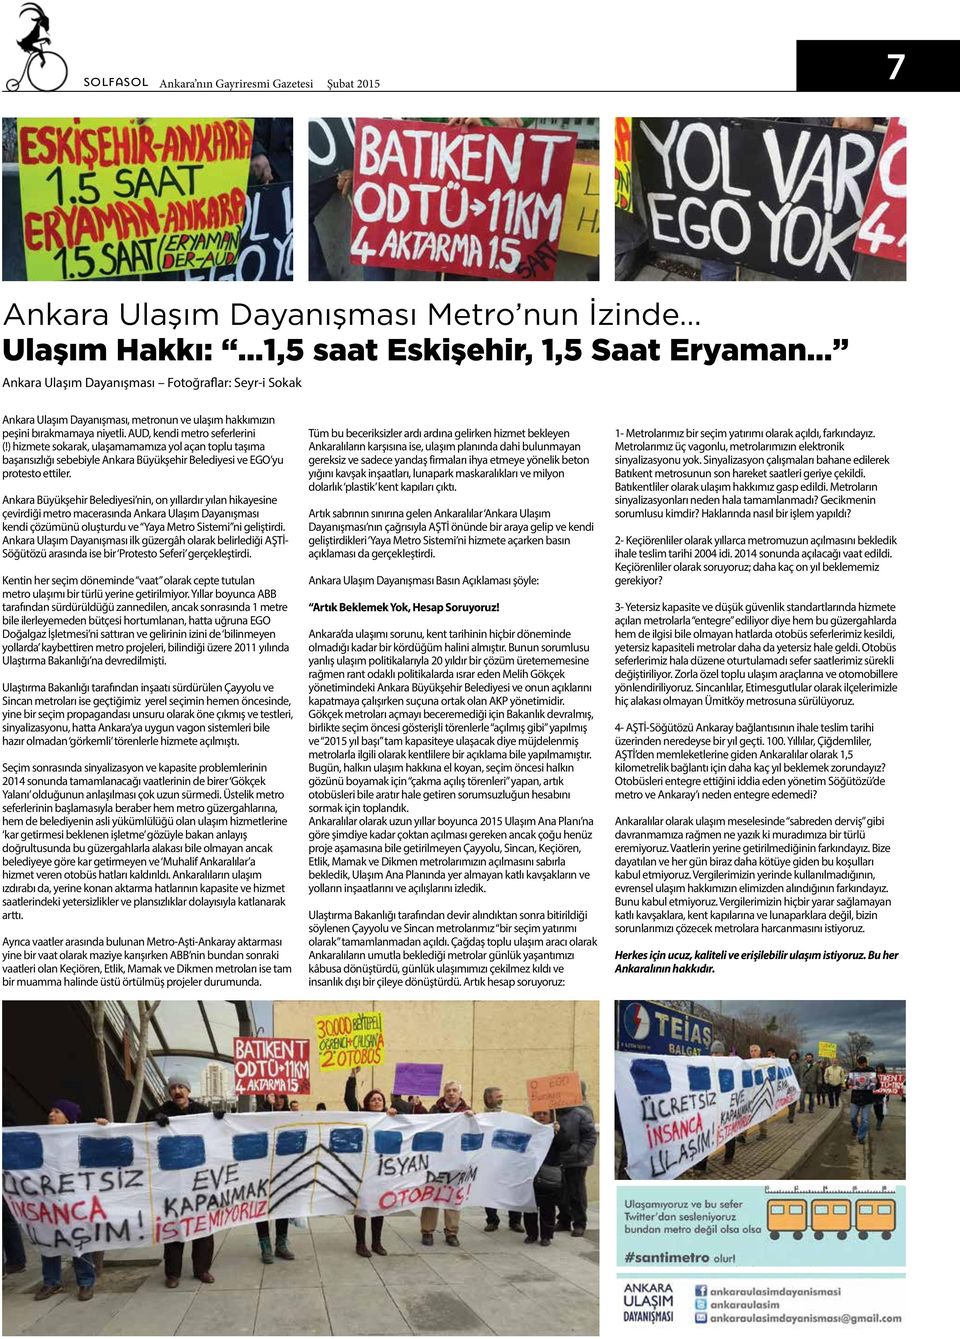 ) hizmete sokarak, ulaşamamamıza yol açan toplu taşıma başarısızlığı sebebiyle Ankara Büyükşehir Belediyesi ve EGO yu protesto ettiler.